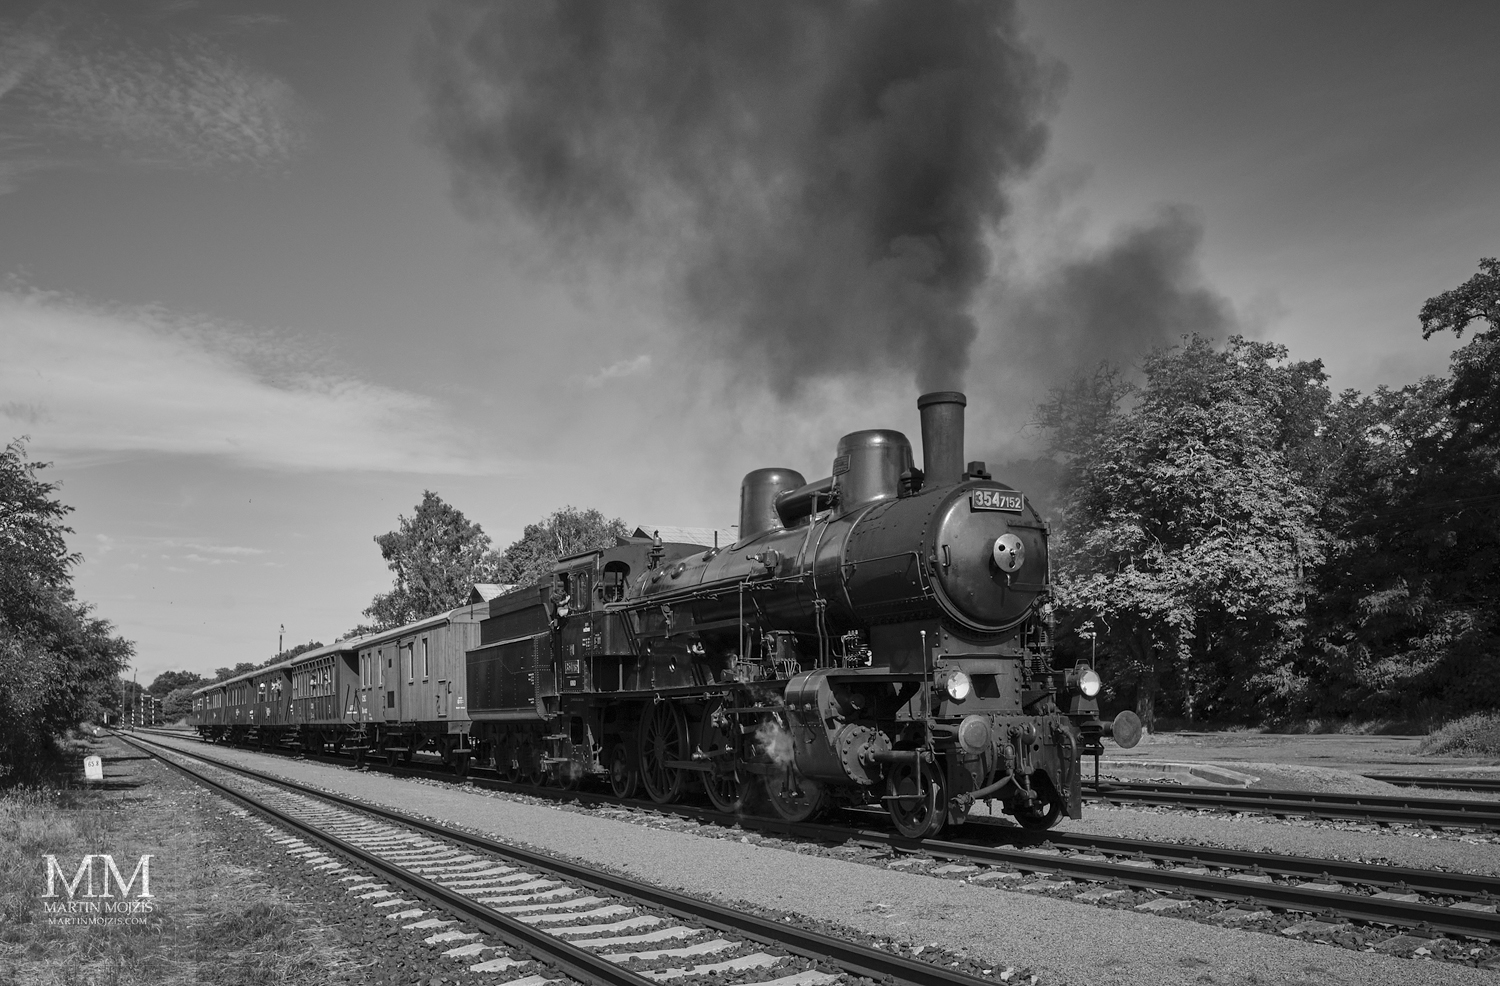 Parní vlak na kolejích. Umělecká fotografie s názvem K POTOKŮM. Fotograf Martin Mojžíš.